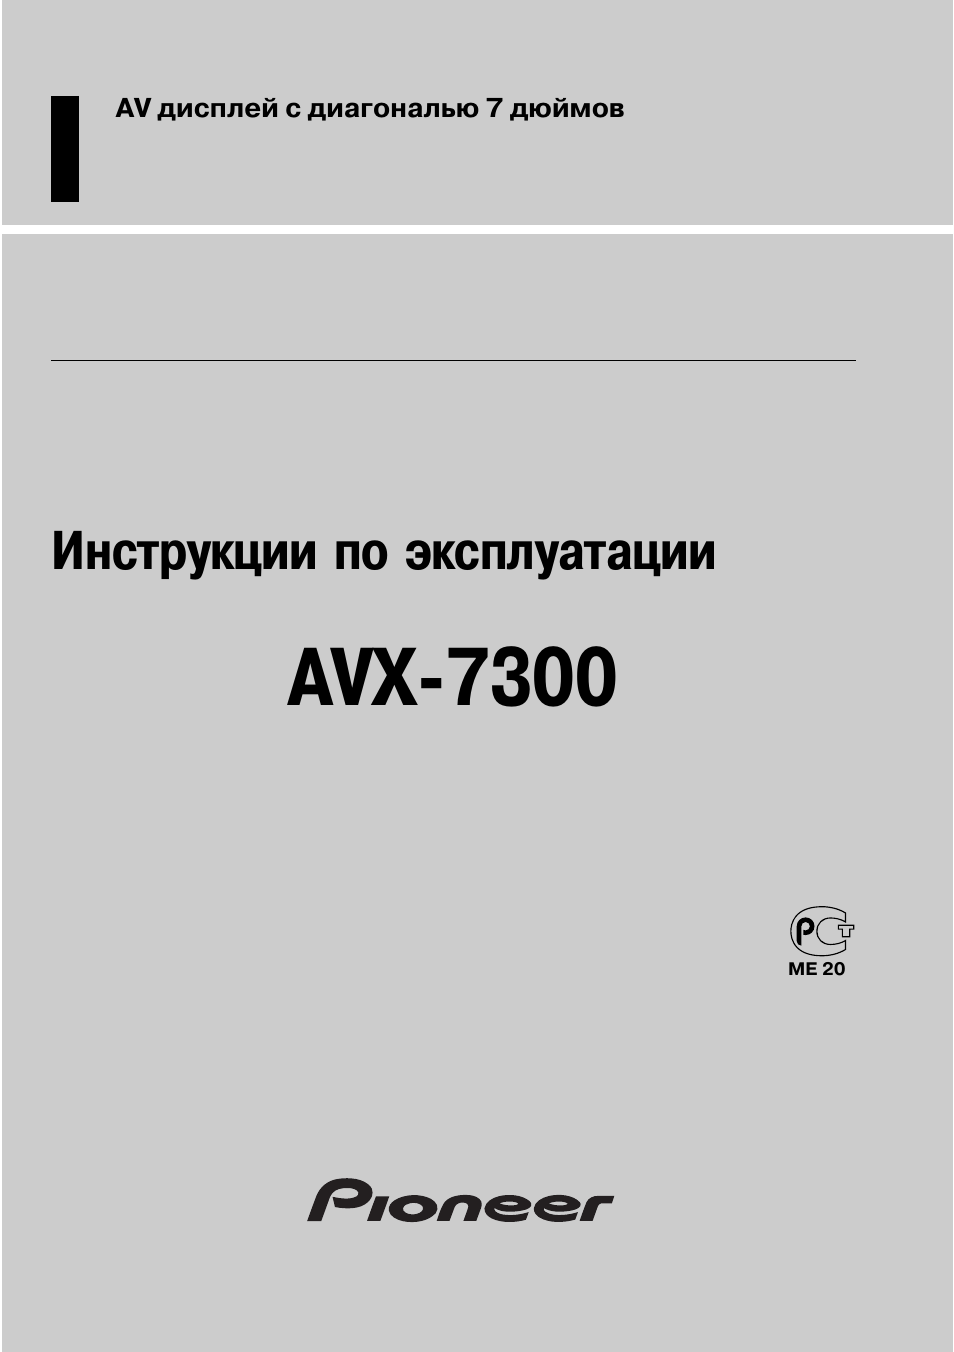 Инструкция по эксплуатации Pioneer AVX-7300 | 24 страницы